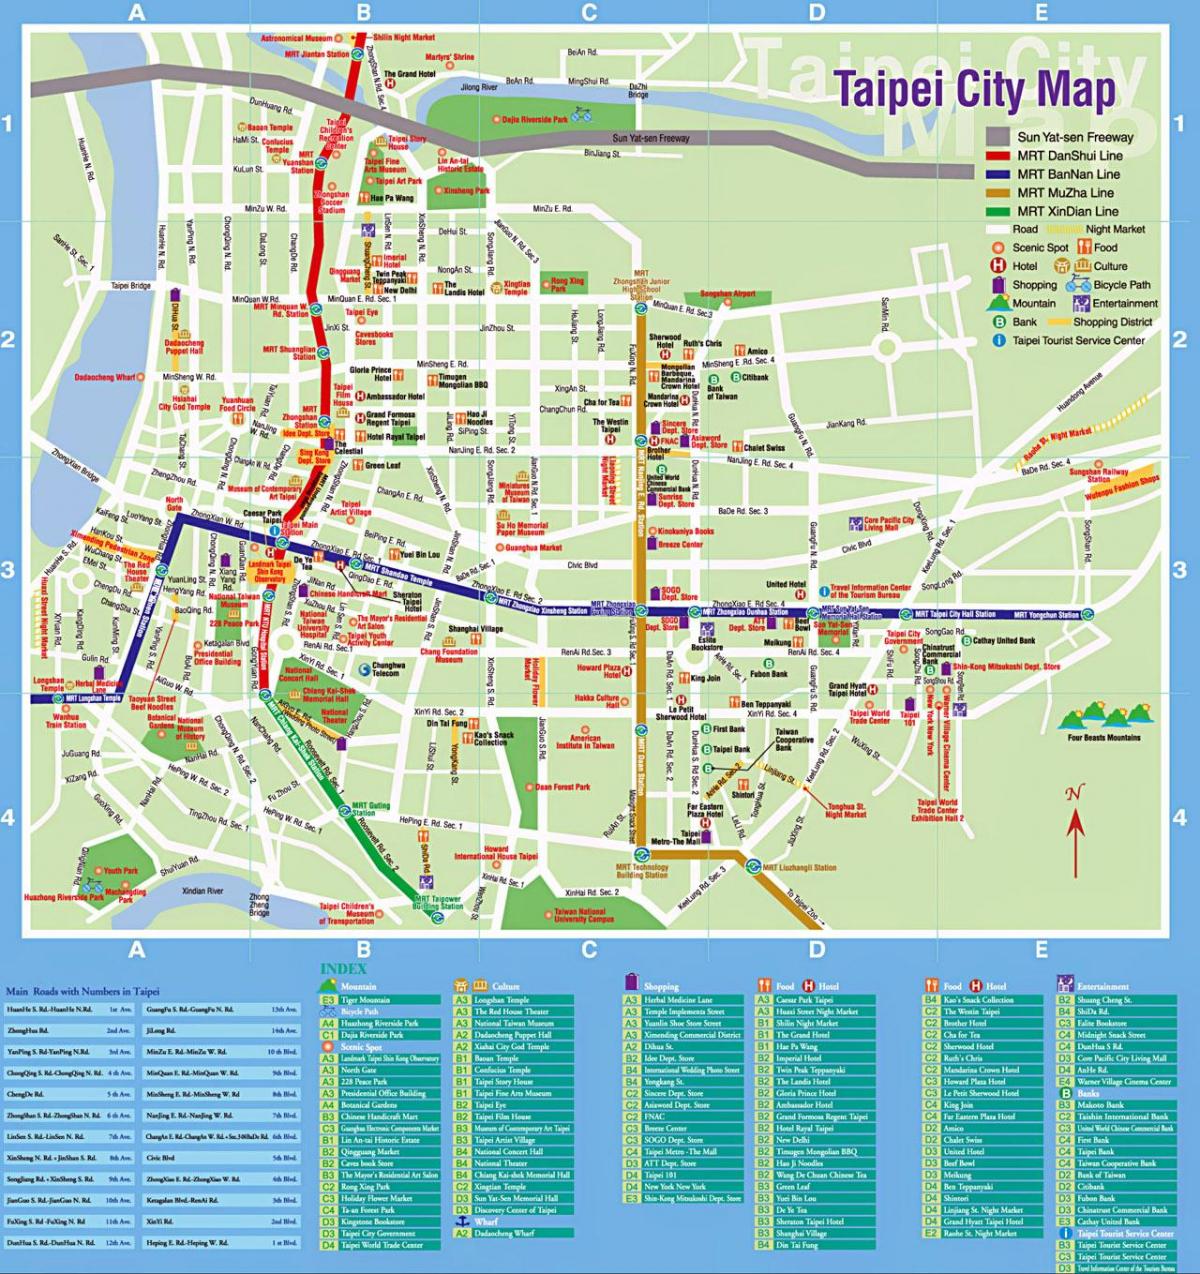 Taipeija razgledanje mapu